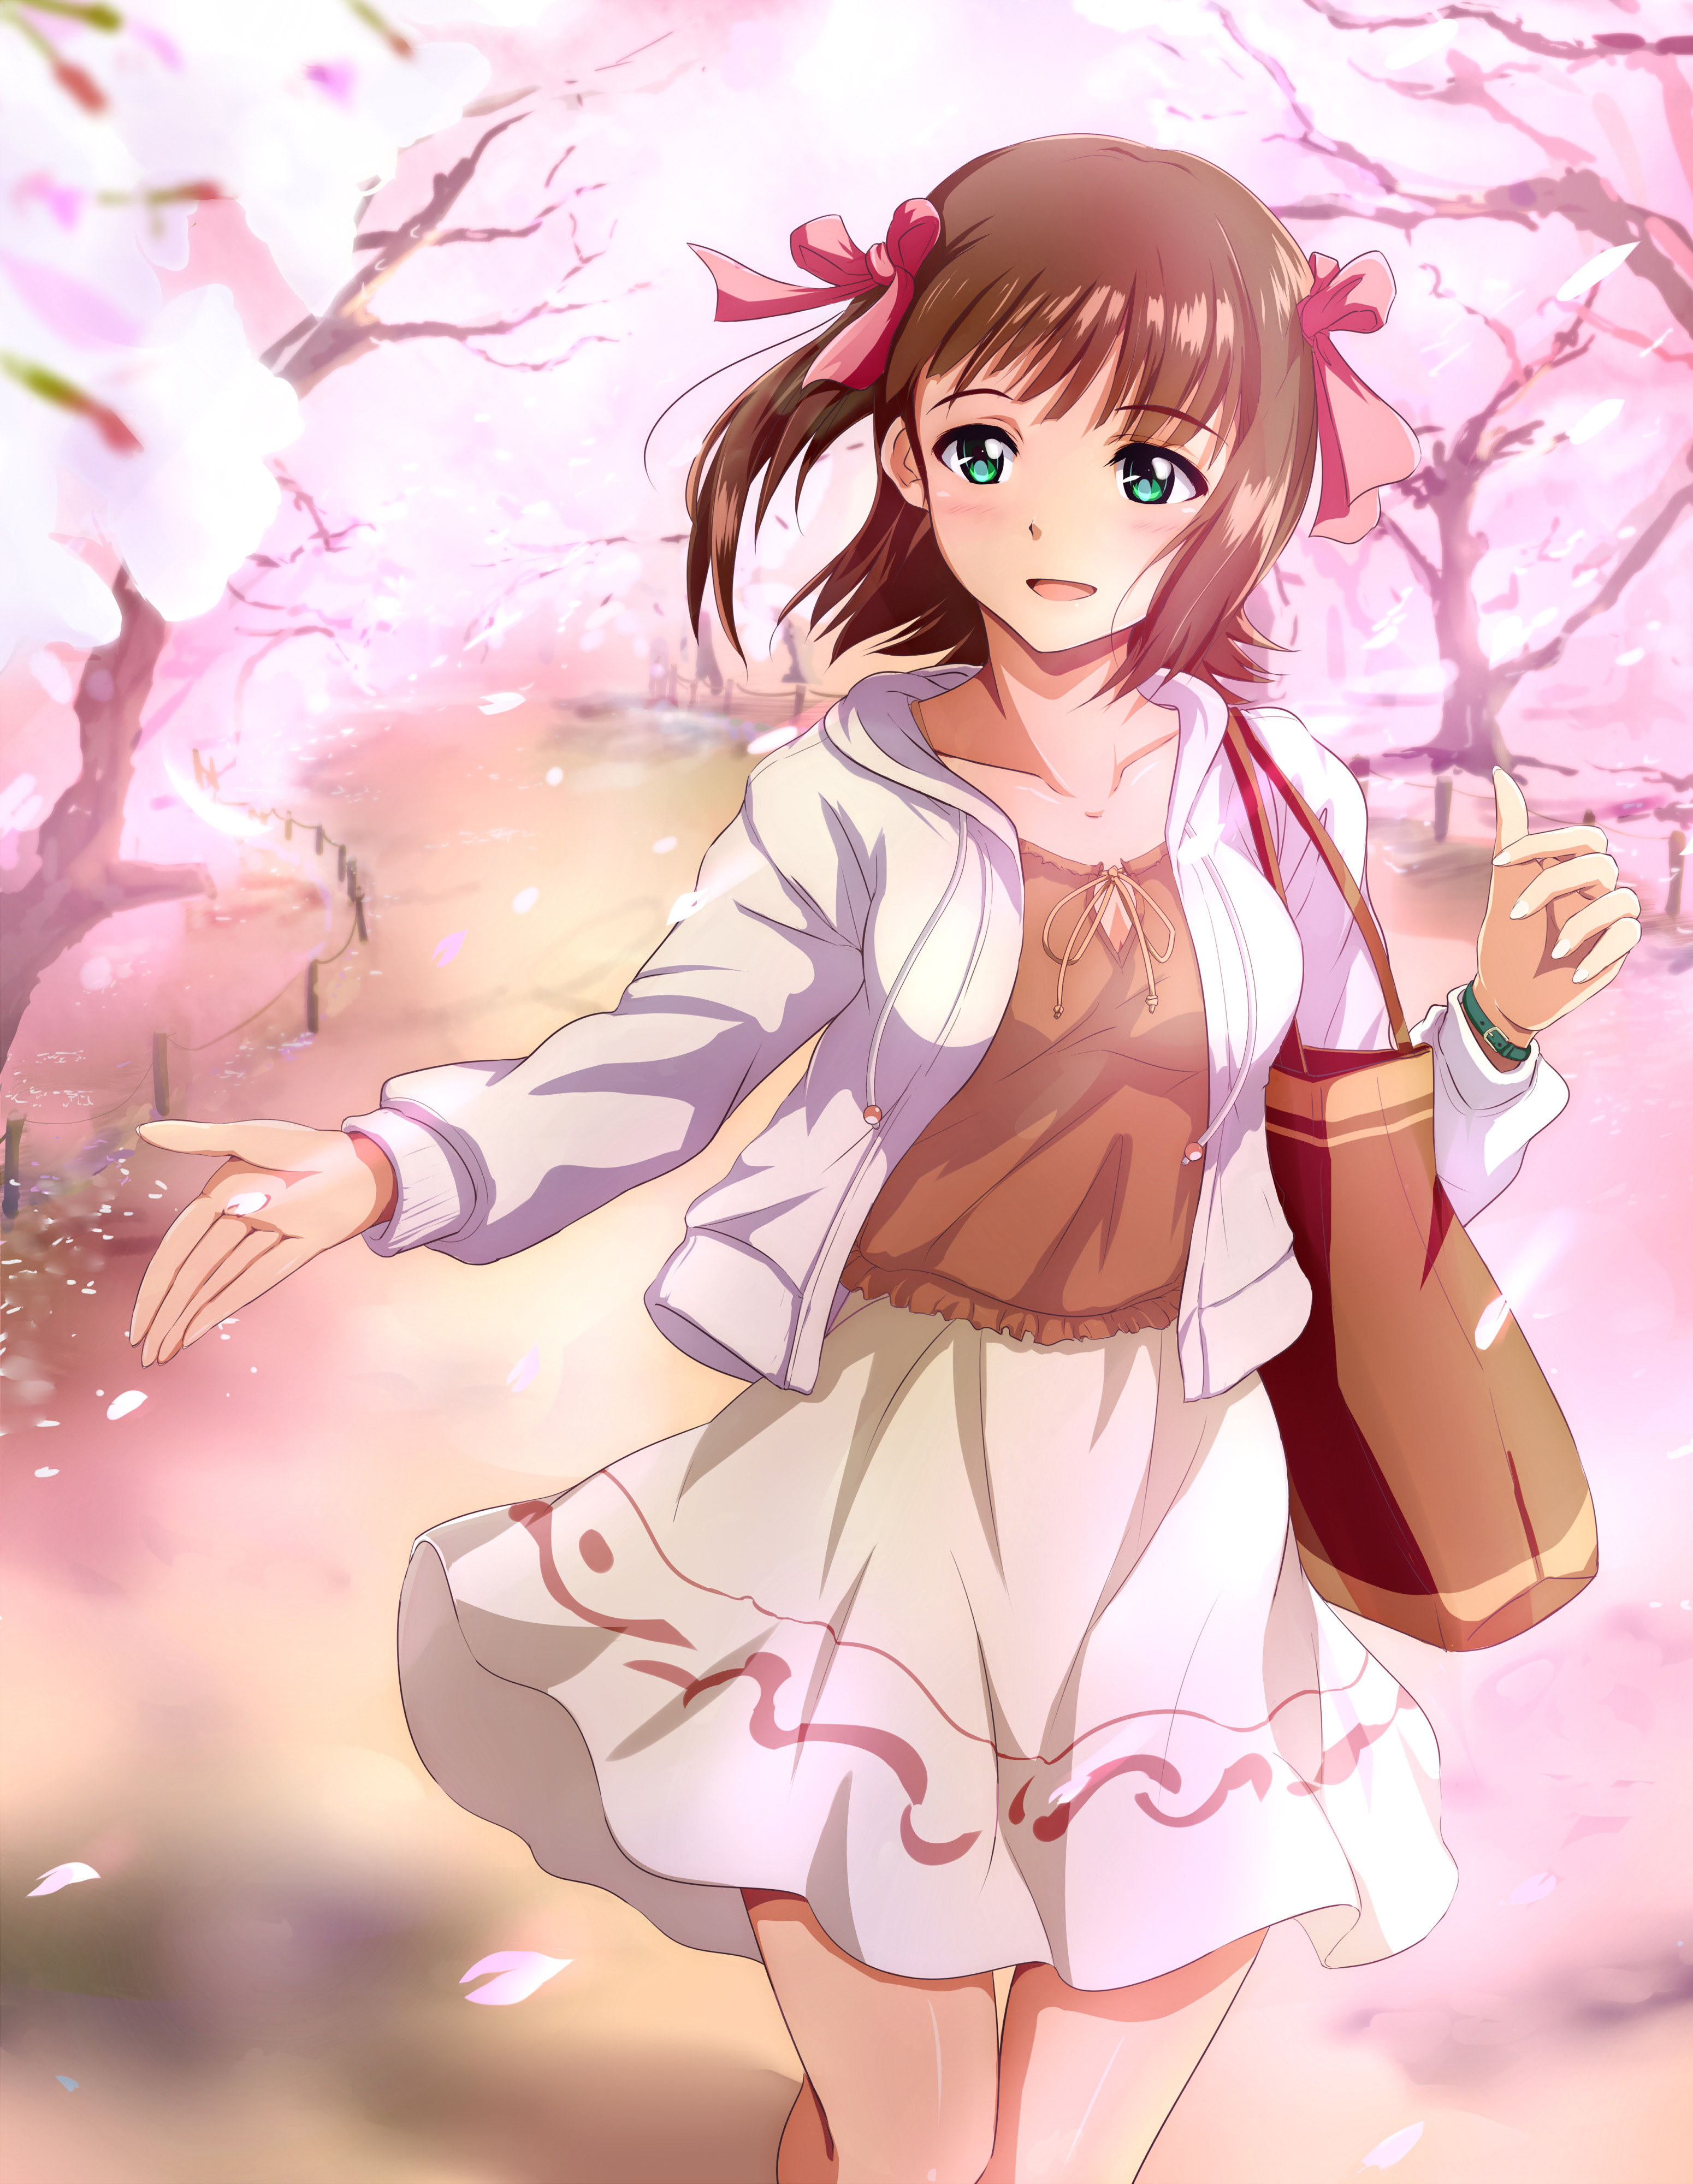 満開の桜と写る女の子は美しい 桜 女子 のイラストまとめ